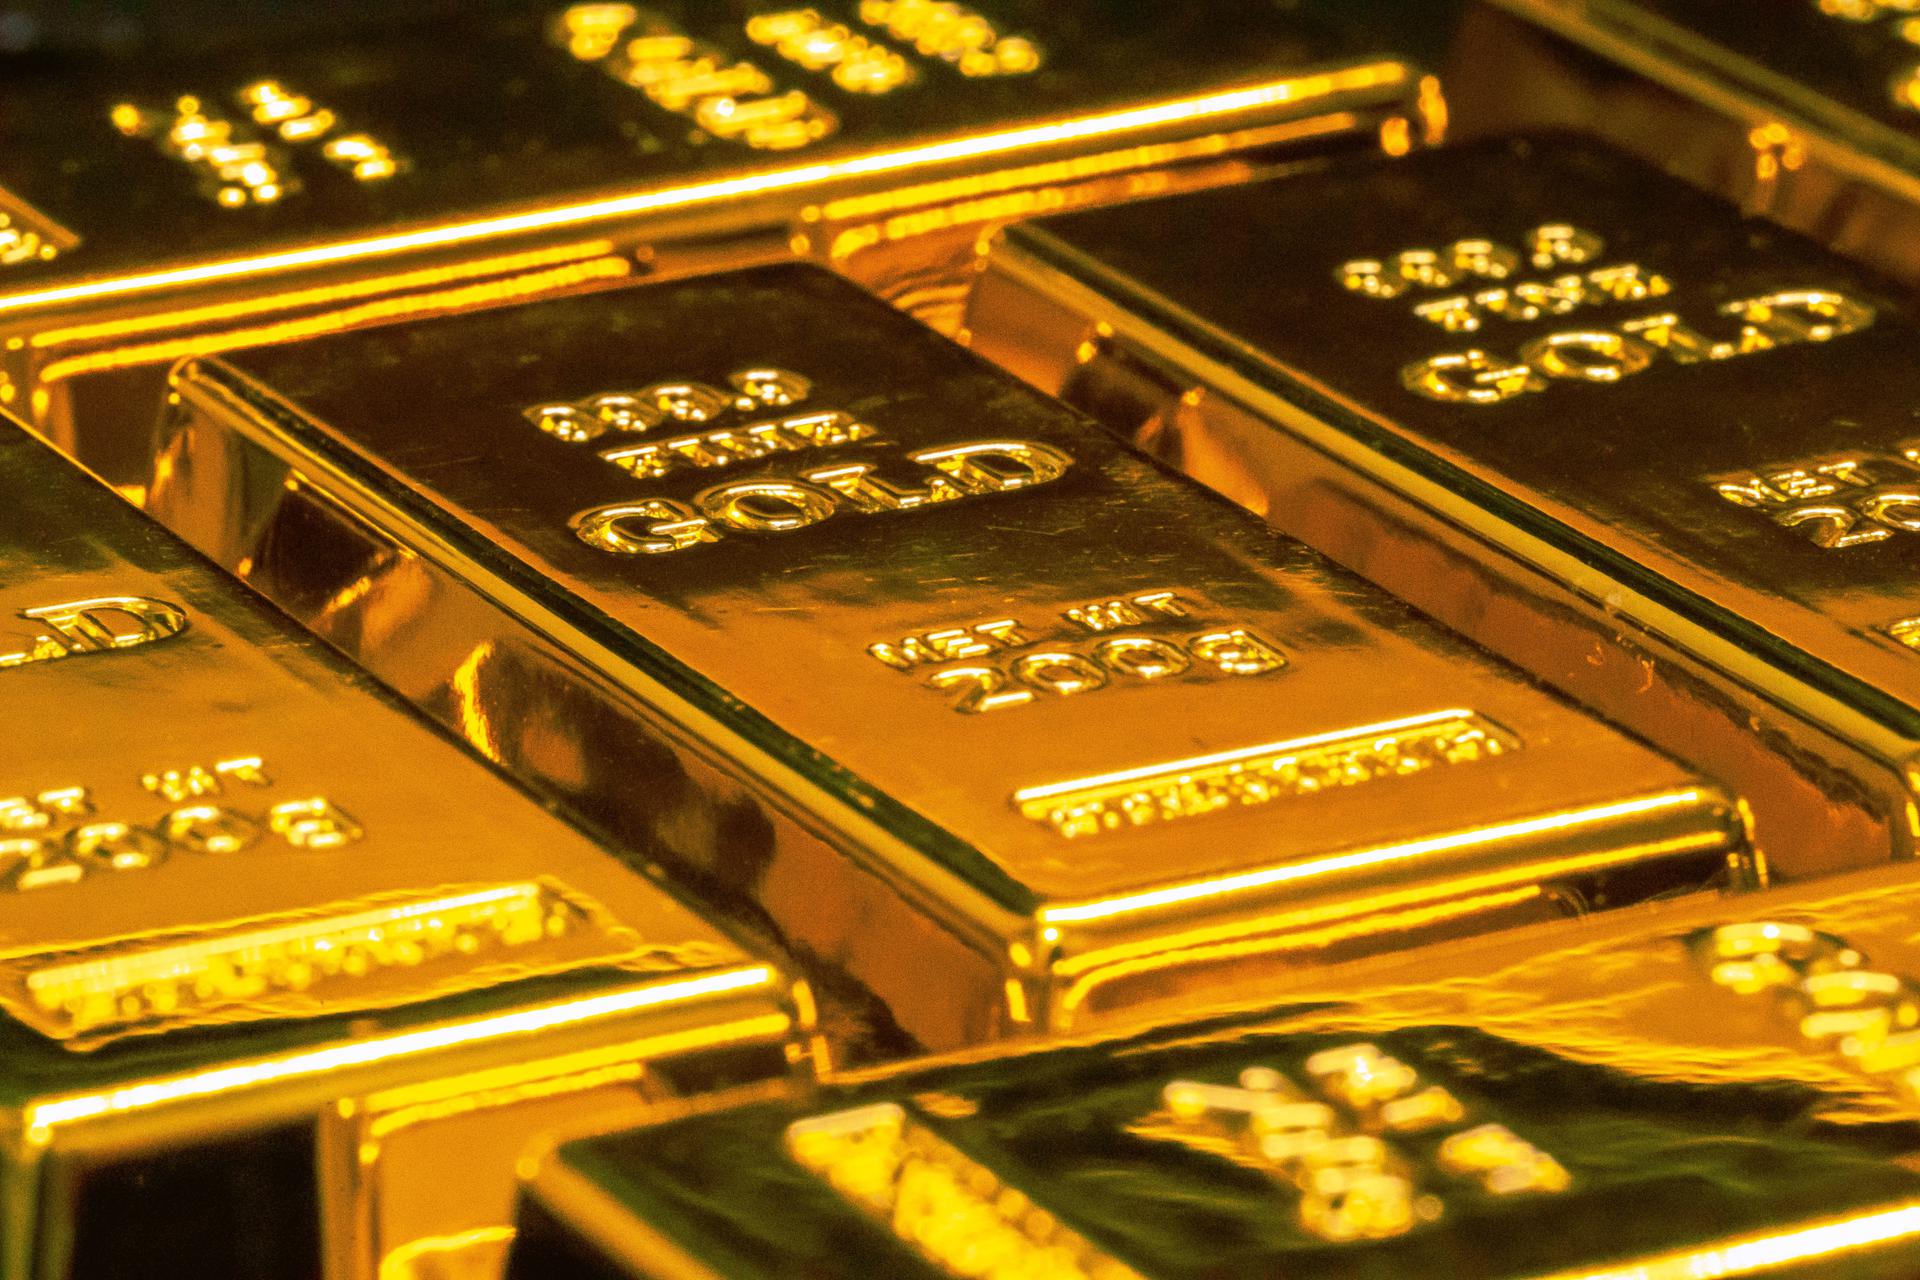 Polonia cumpără aur în masă!  Ce se întâmplă?  Doar China ne vinde